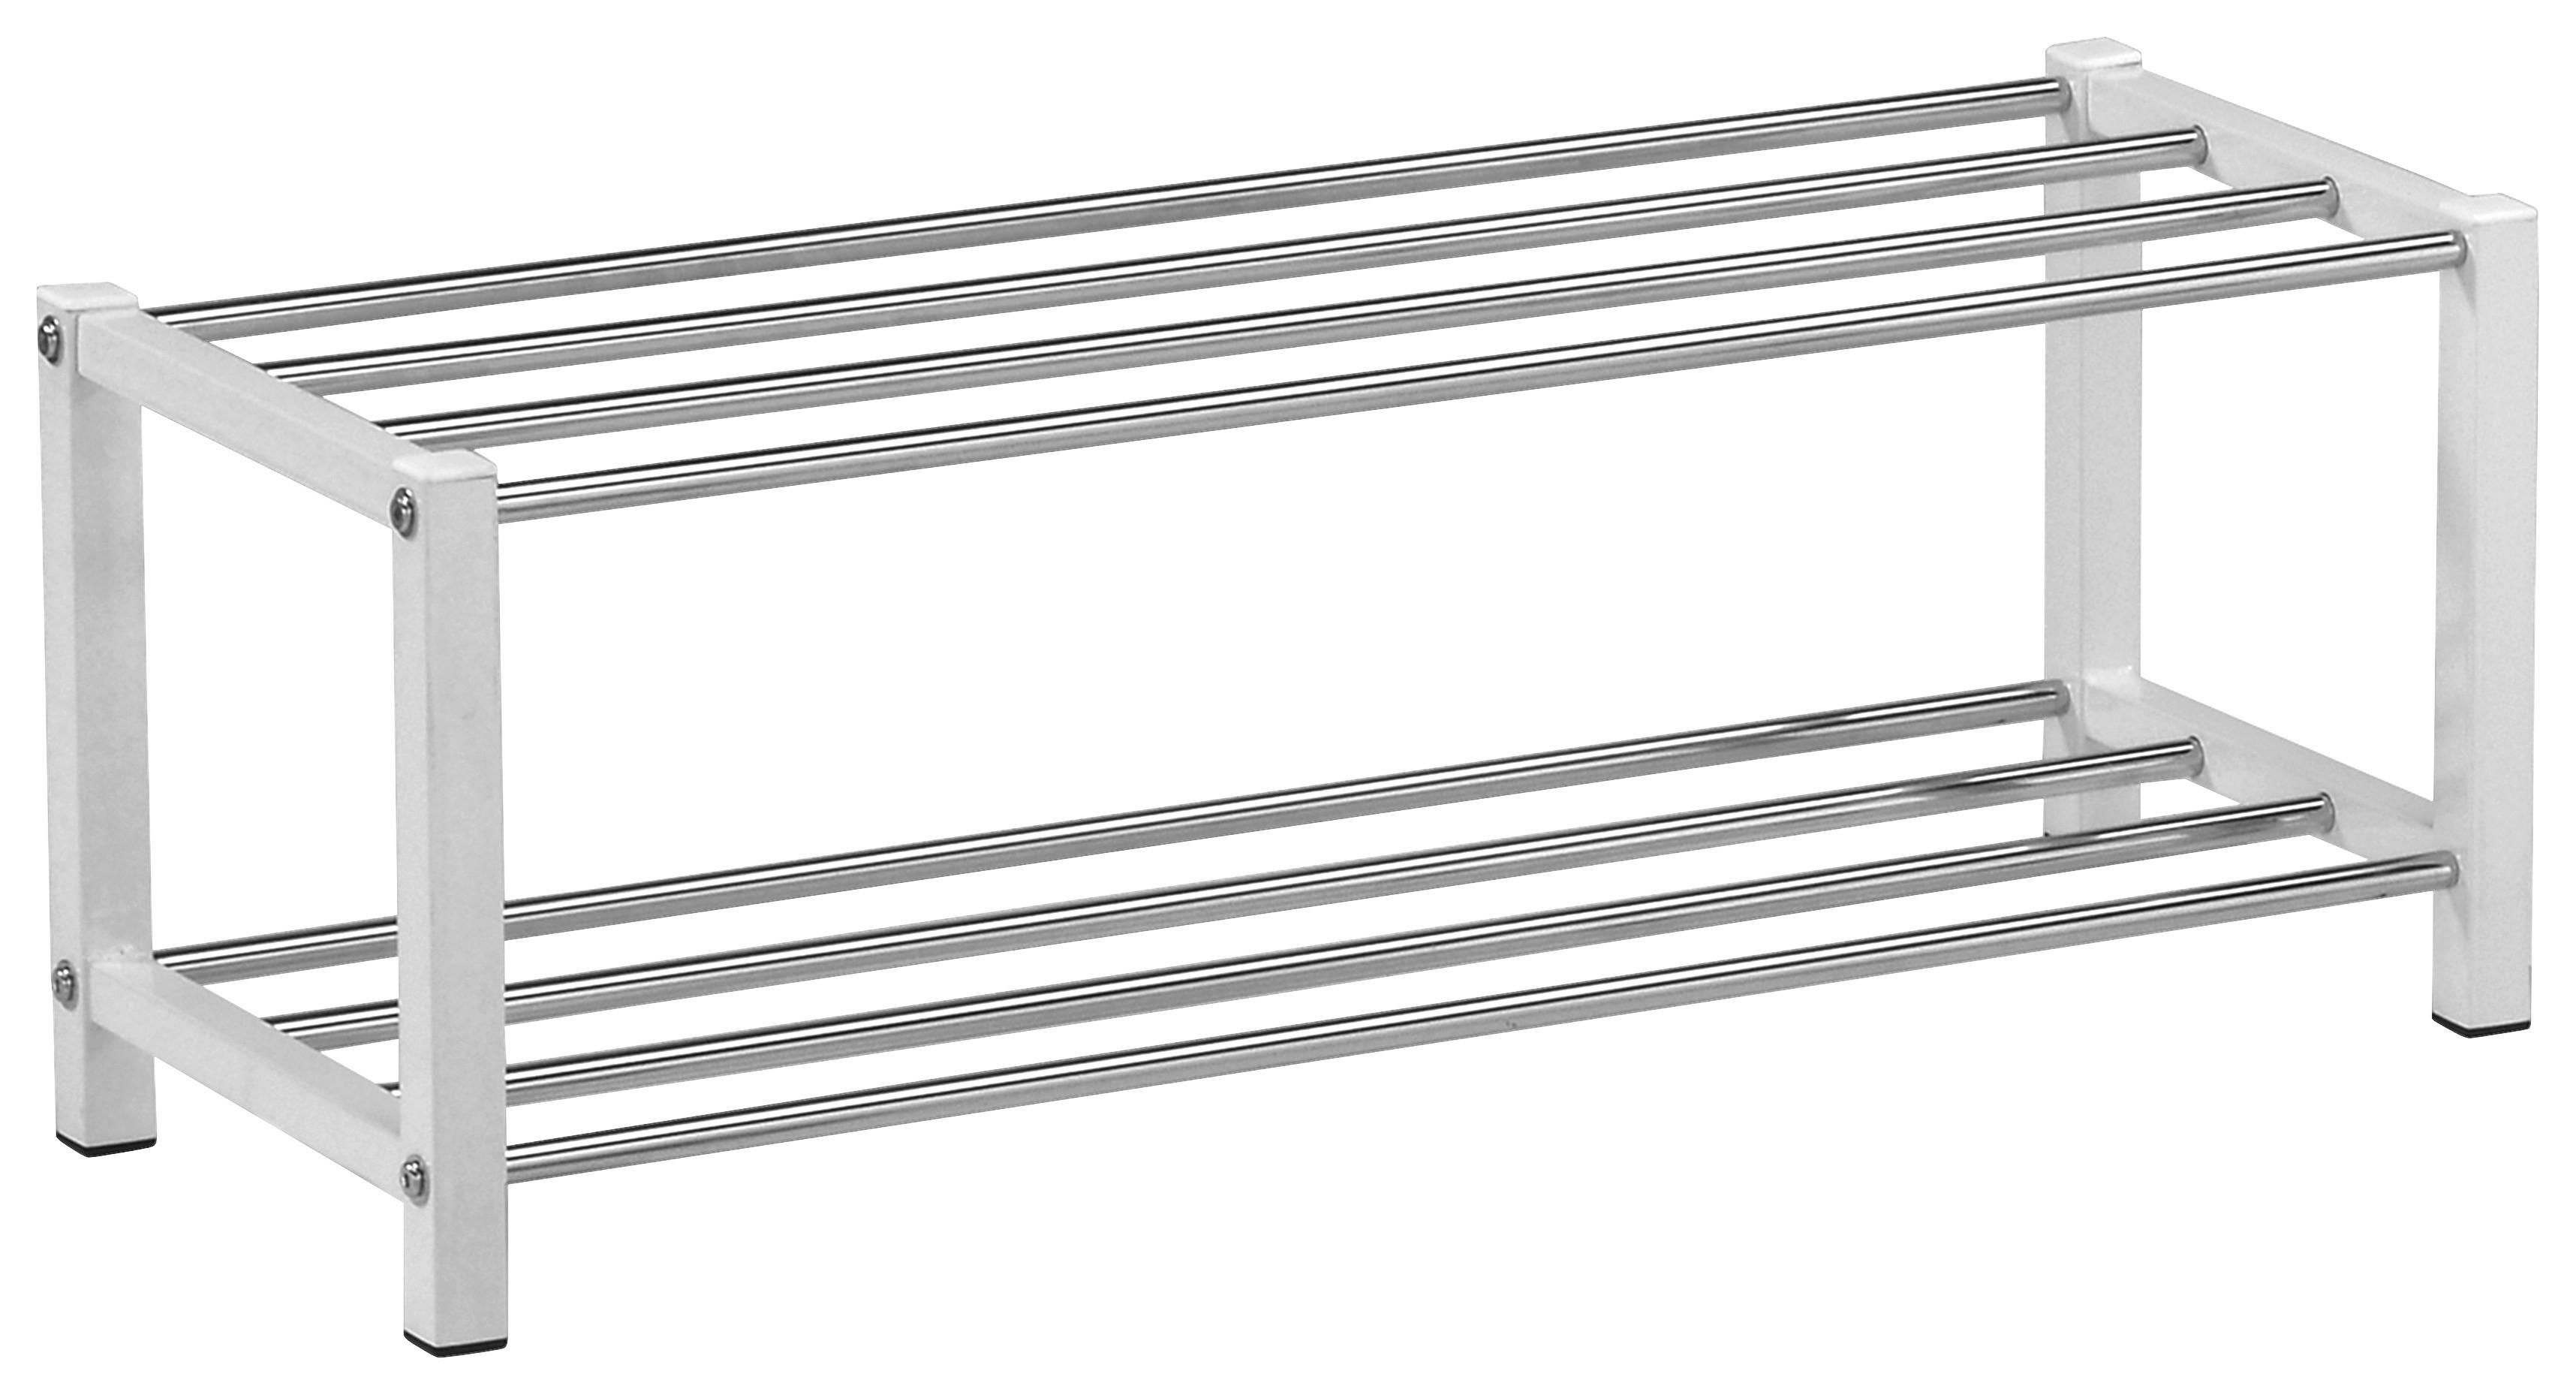 Schuhregal Kai 2 Ablagen 6 Paar Chrom/Weiß H: 27 cm - Chromfarben/Weiß, MODERN, Metall (80/27/28,5cm)